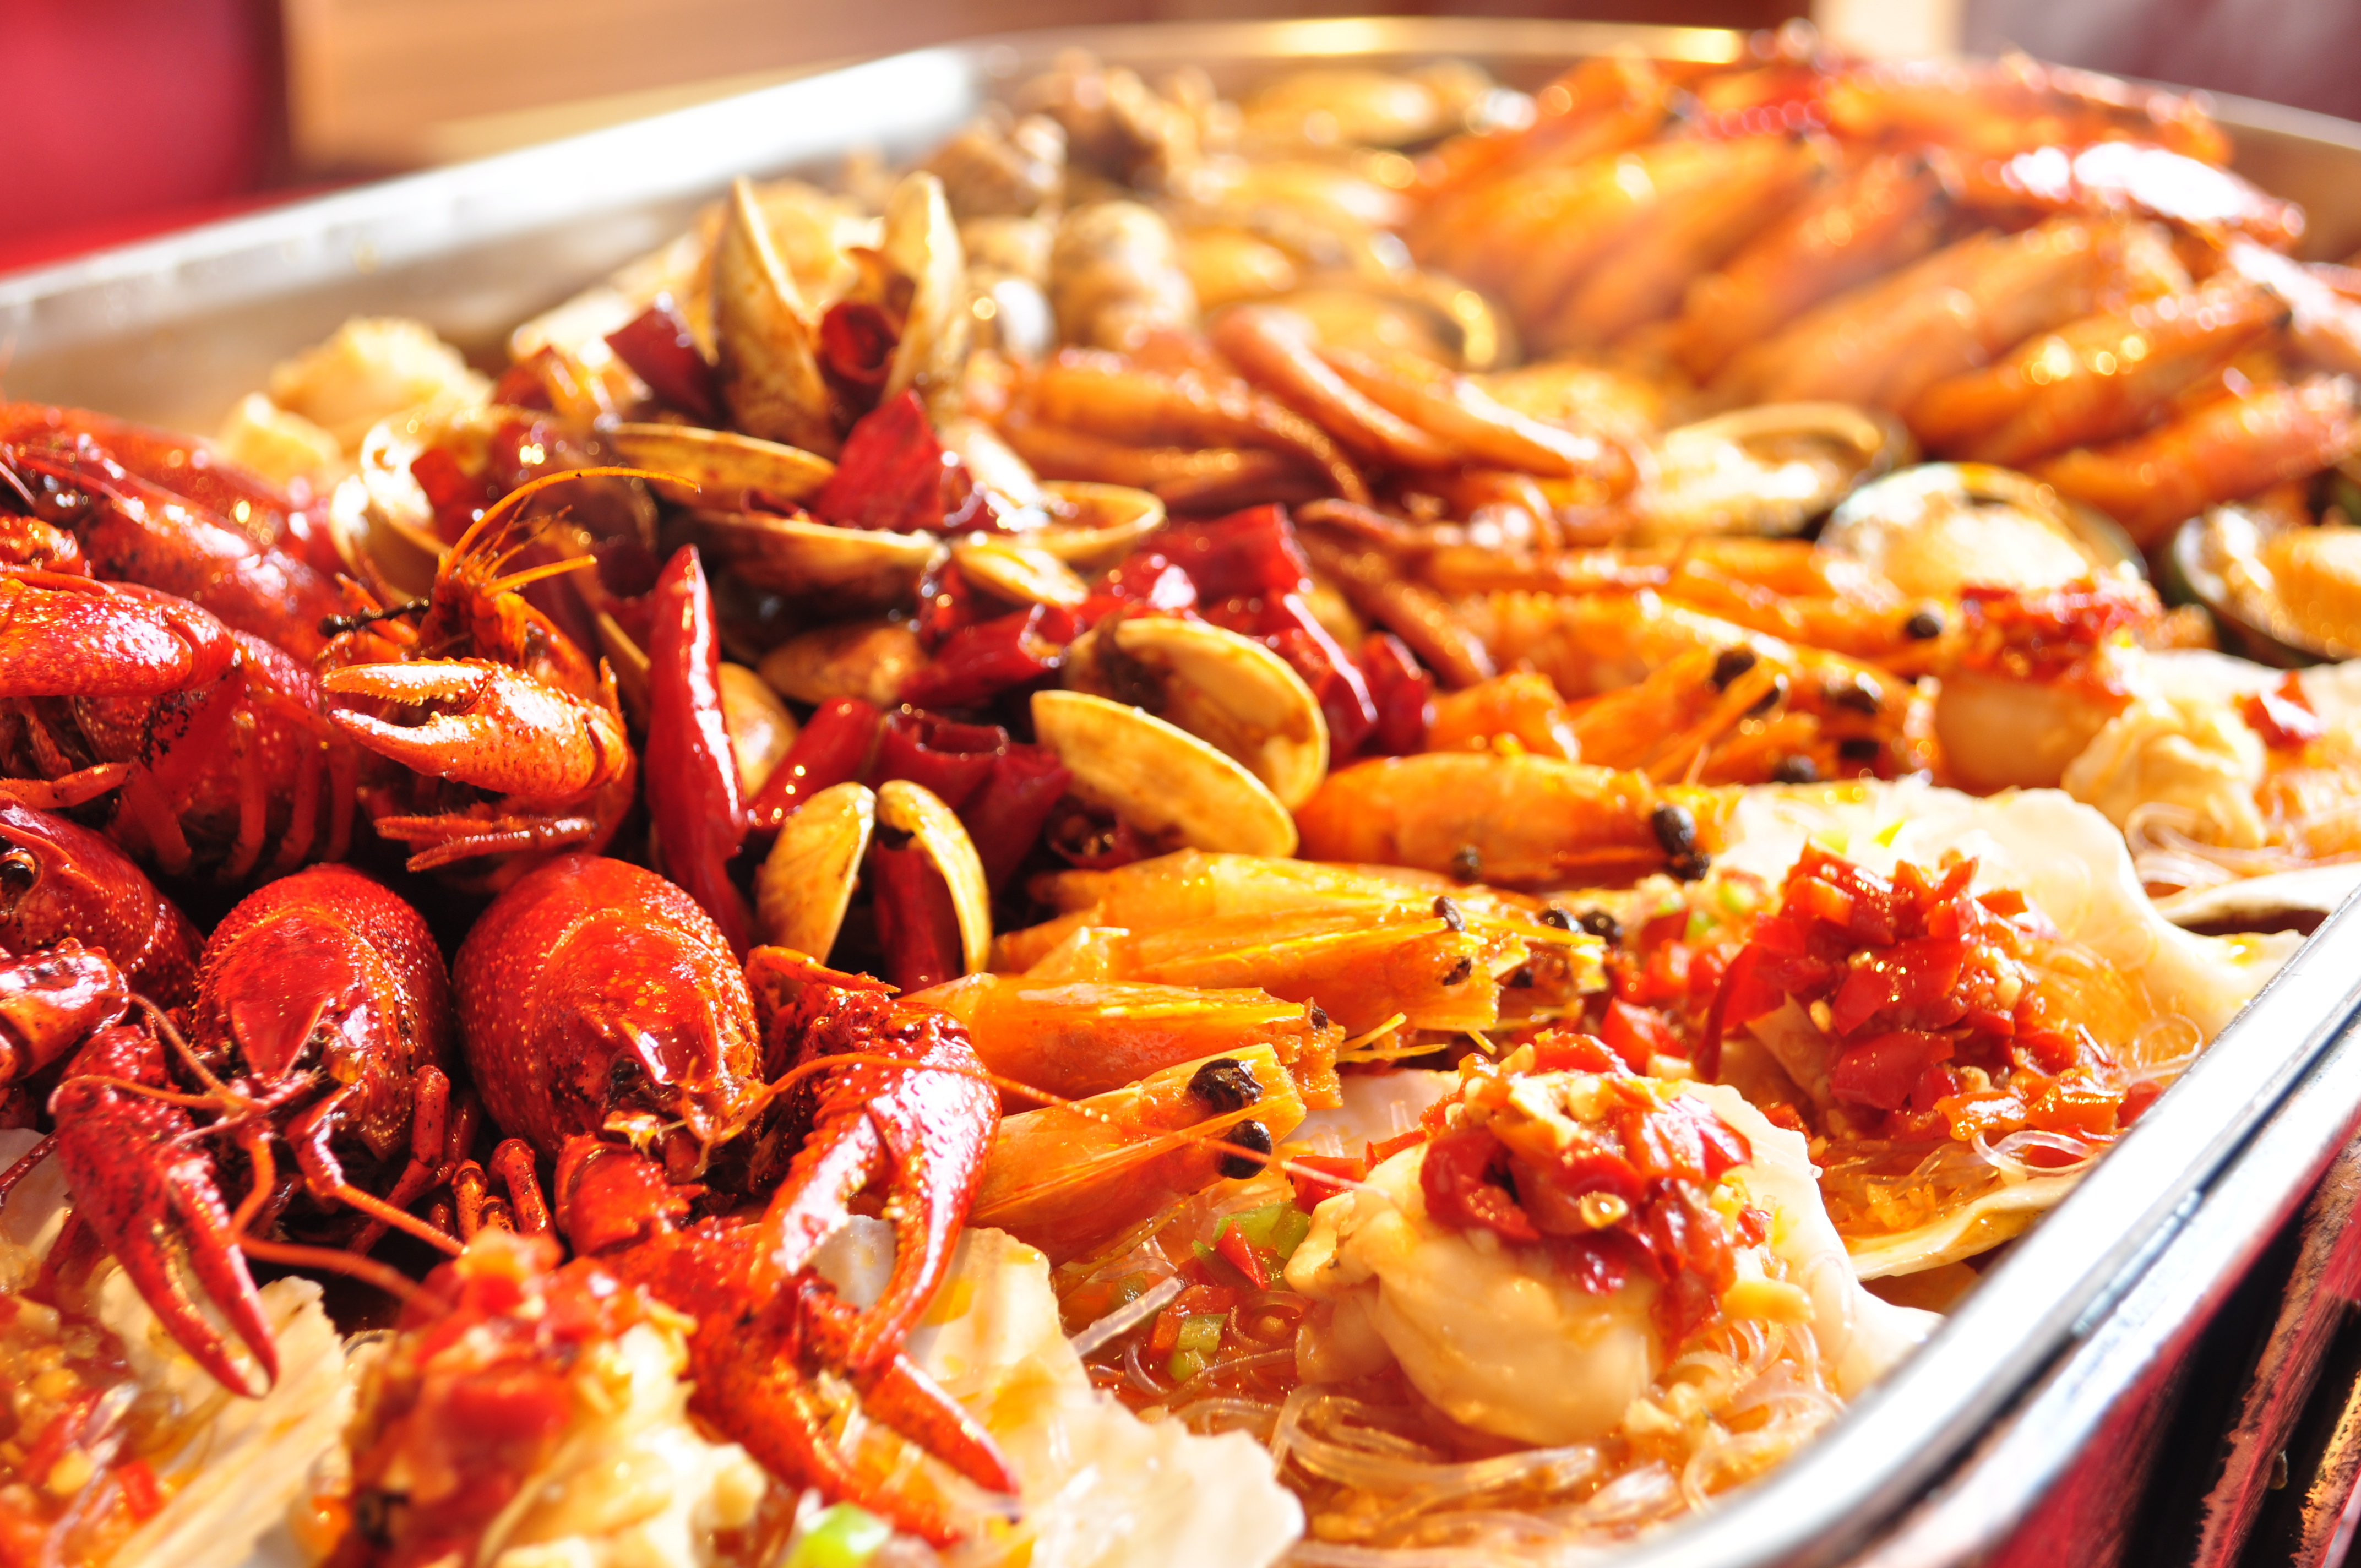 海鲜盛筵套餐以最新鲜的食材制作,颠覆传统的海鲜大餐,海鲜盛宴中